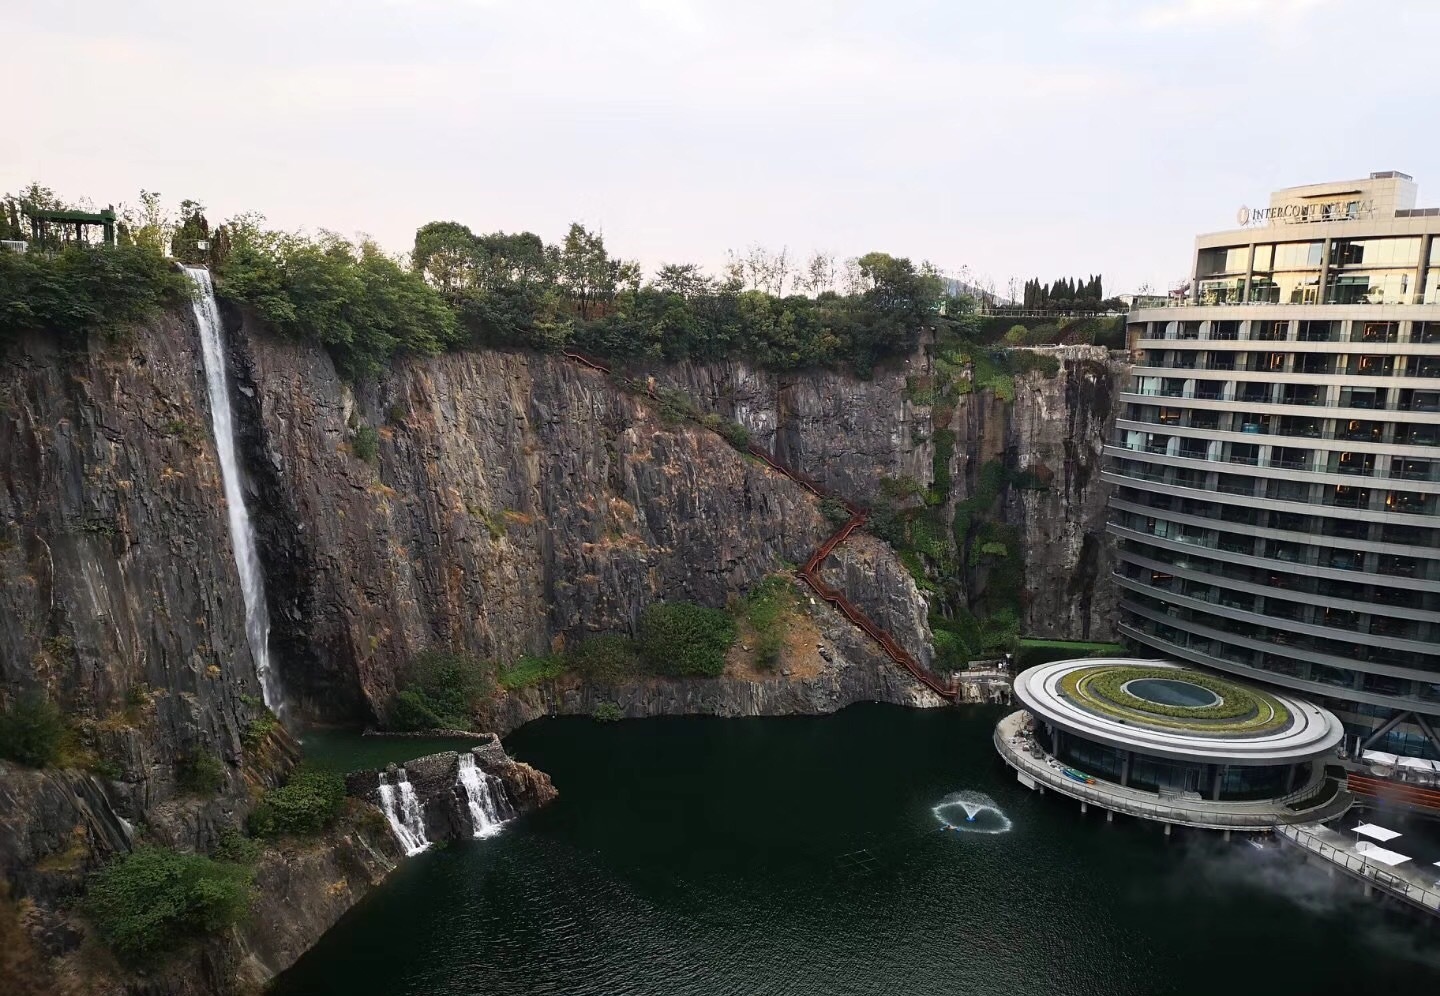 上海市松江区的深坑酒店有了开业迹象,本身还会提供